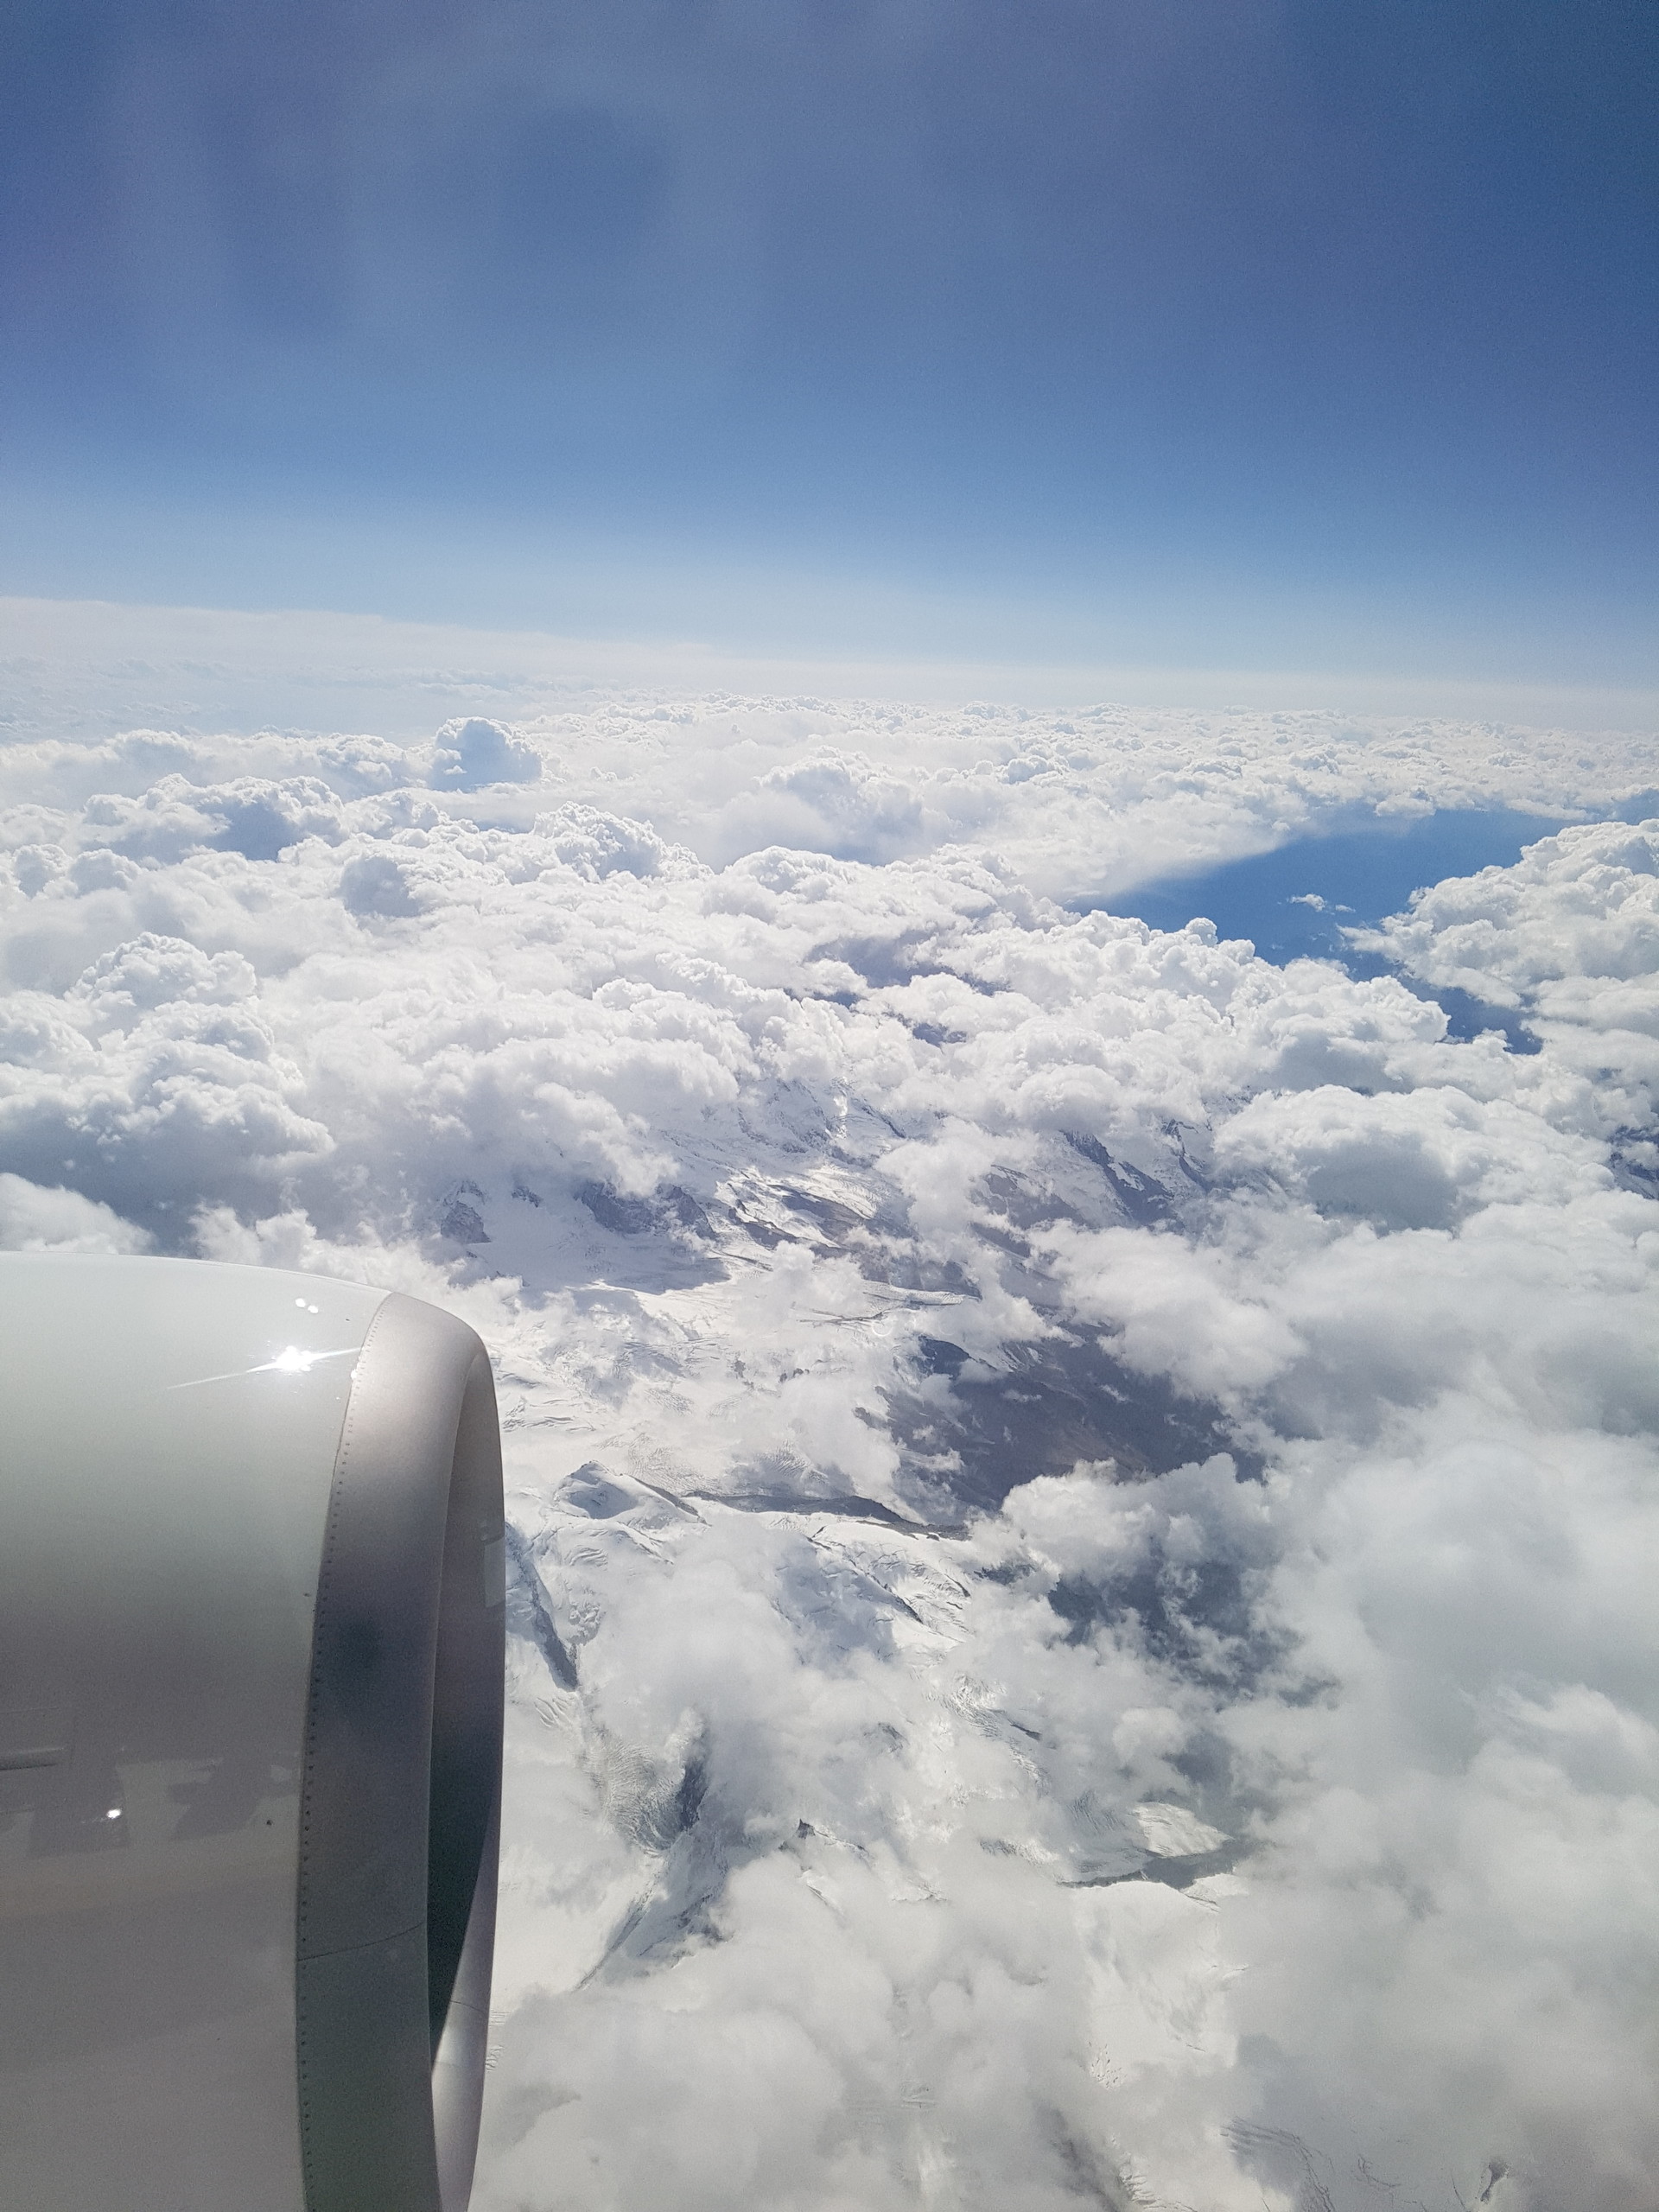 Viaggi in aereo: vestiti e accessori da evitare assolutamente quando si vola